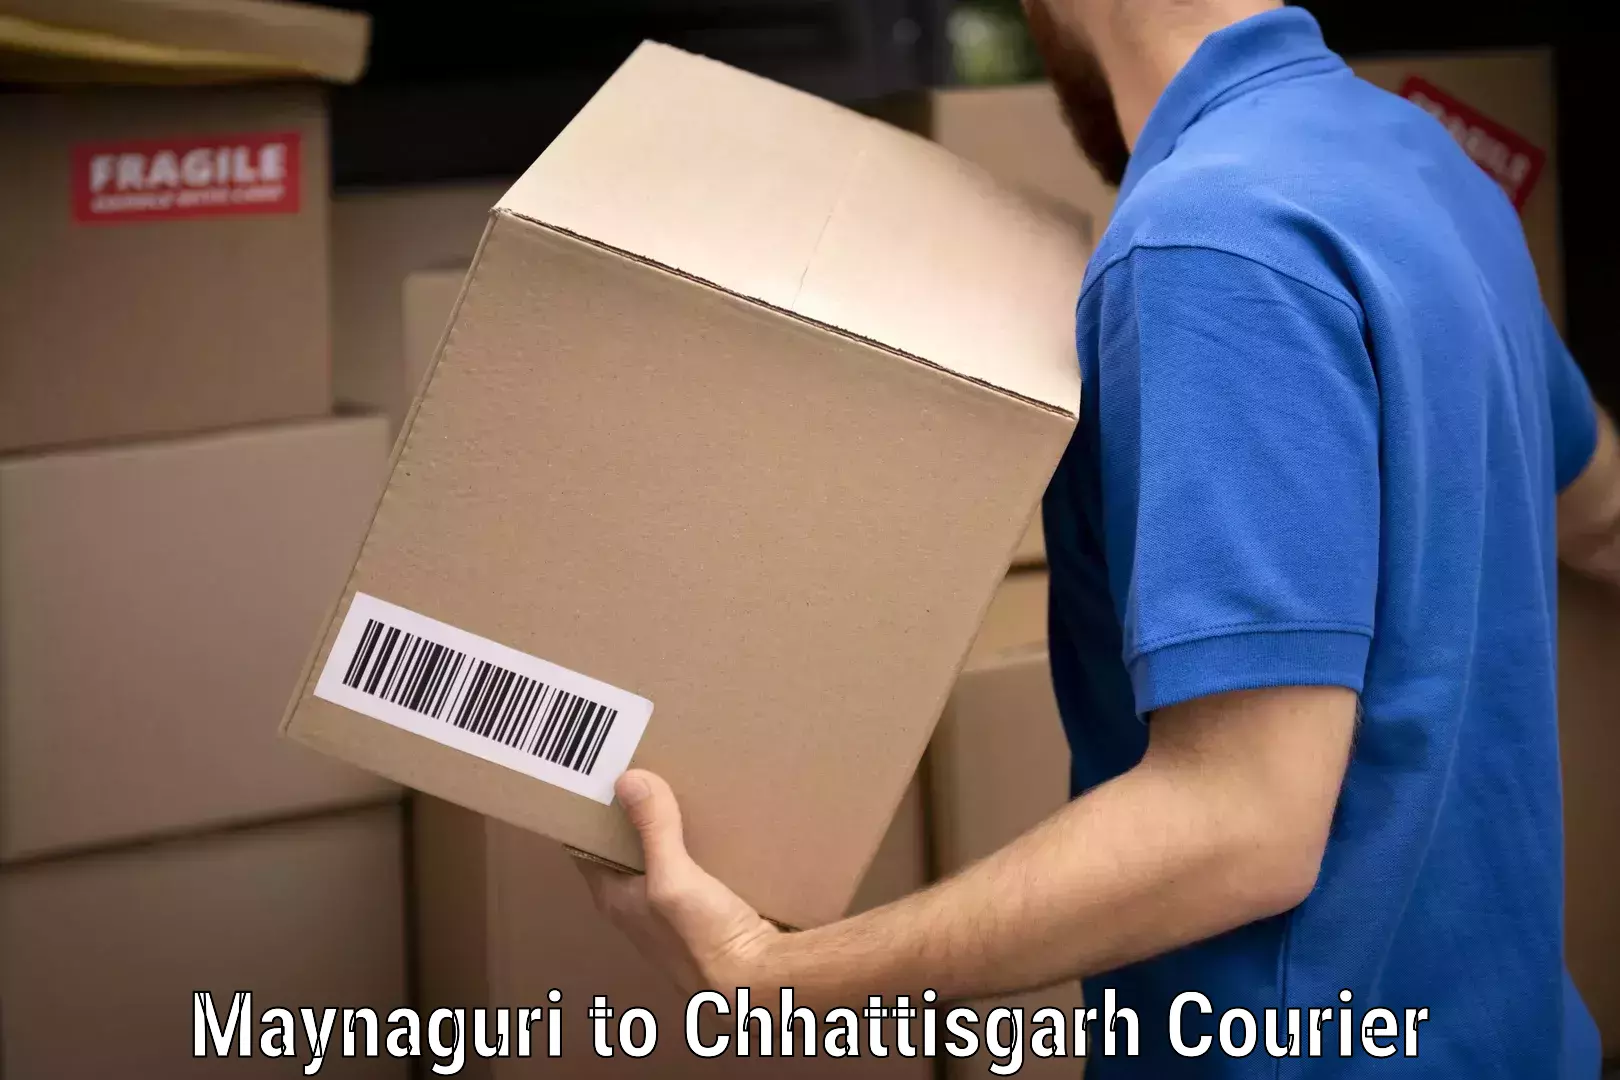 Furniture delivery service Maynaguri to Chhattisgarh